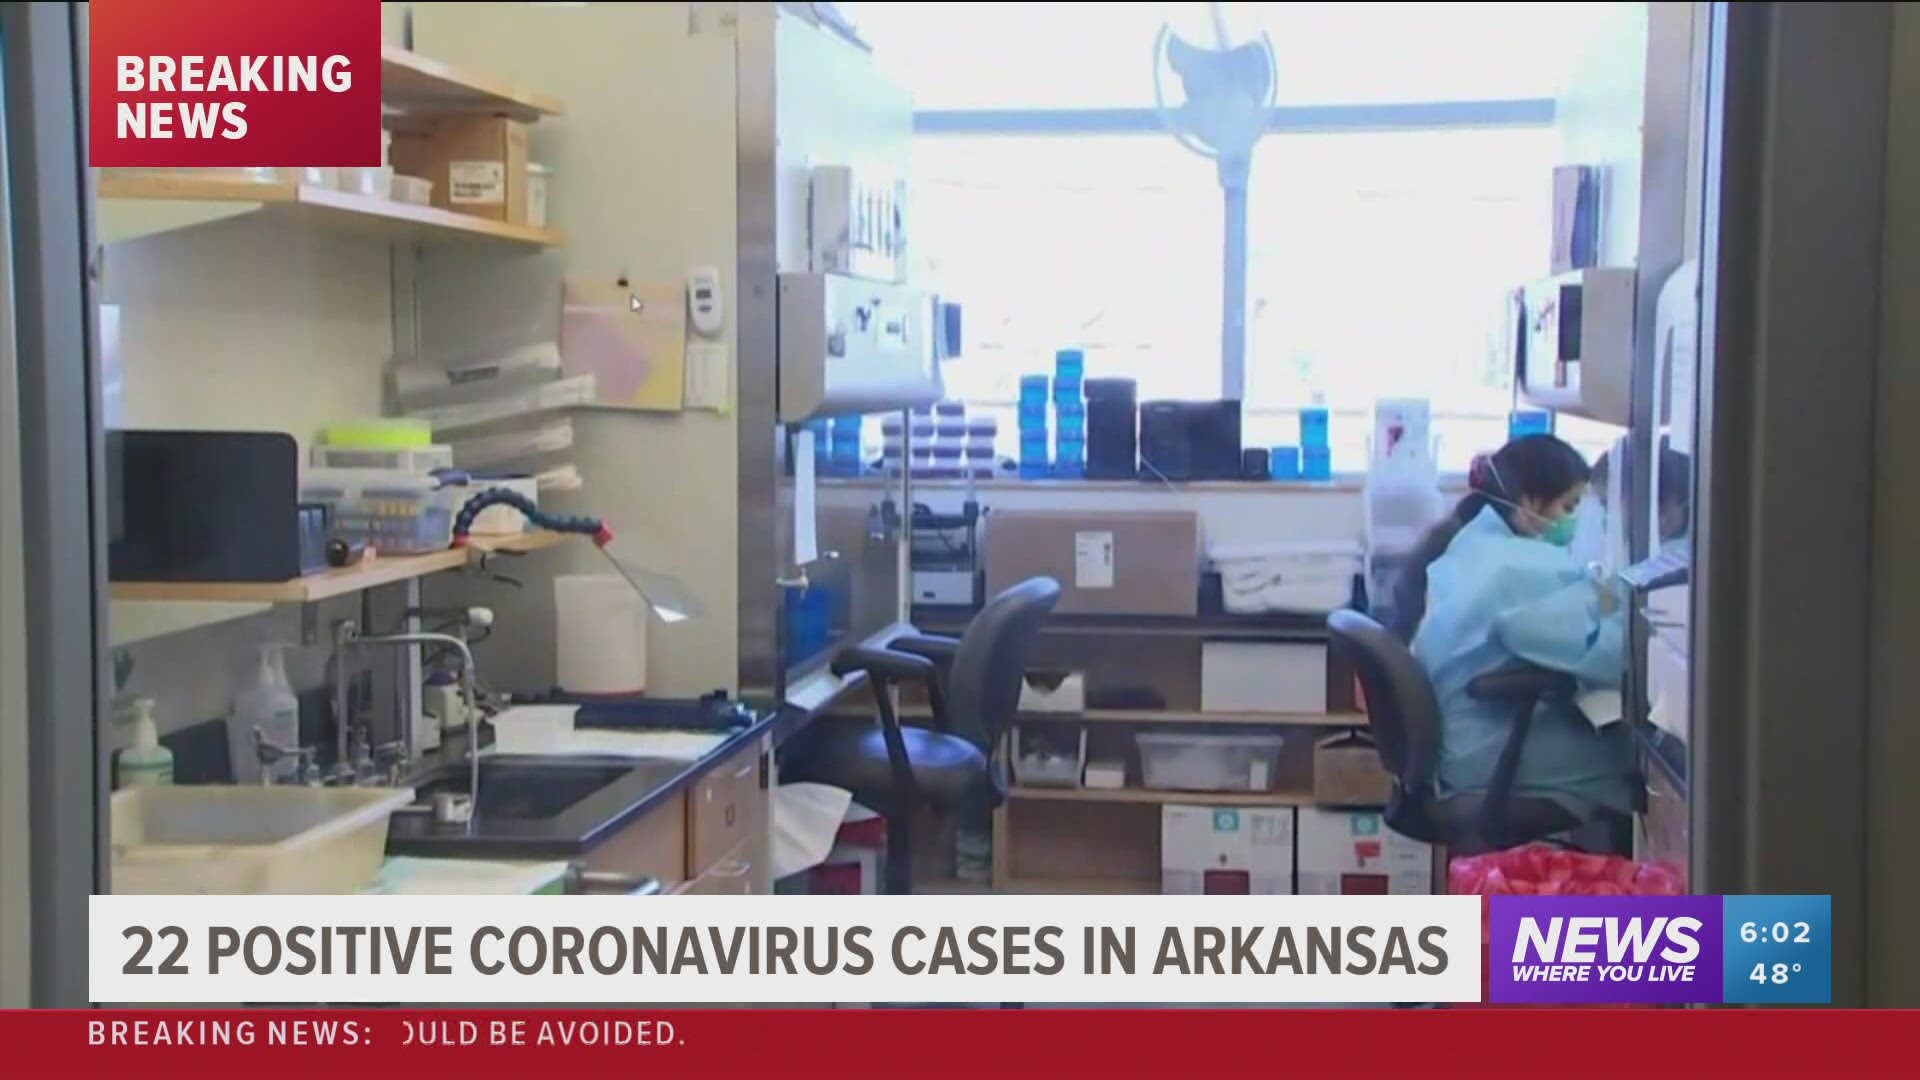 Gov. addresses 22 positive coronavirus cases in Arkansas